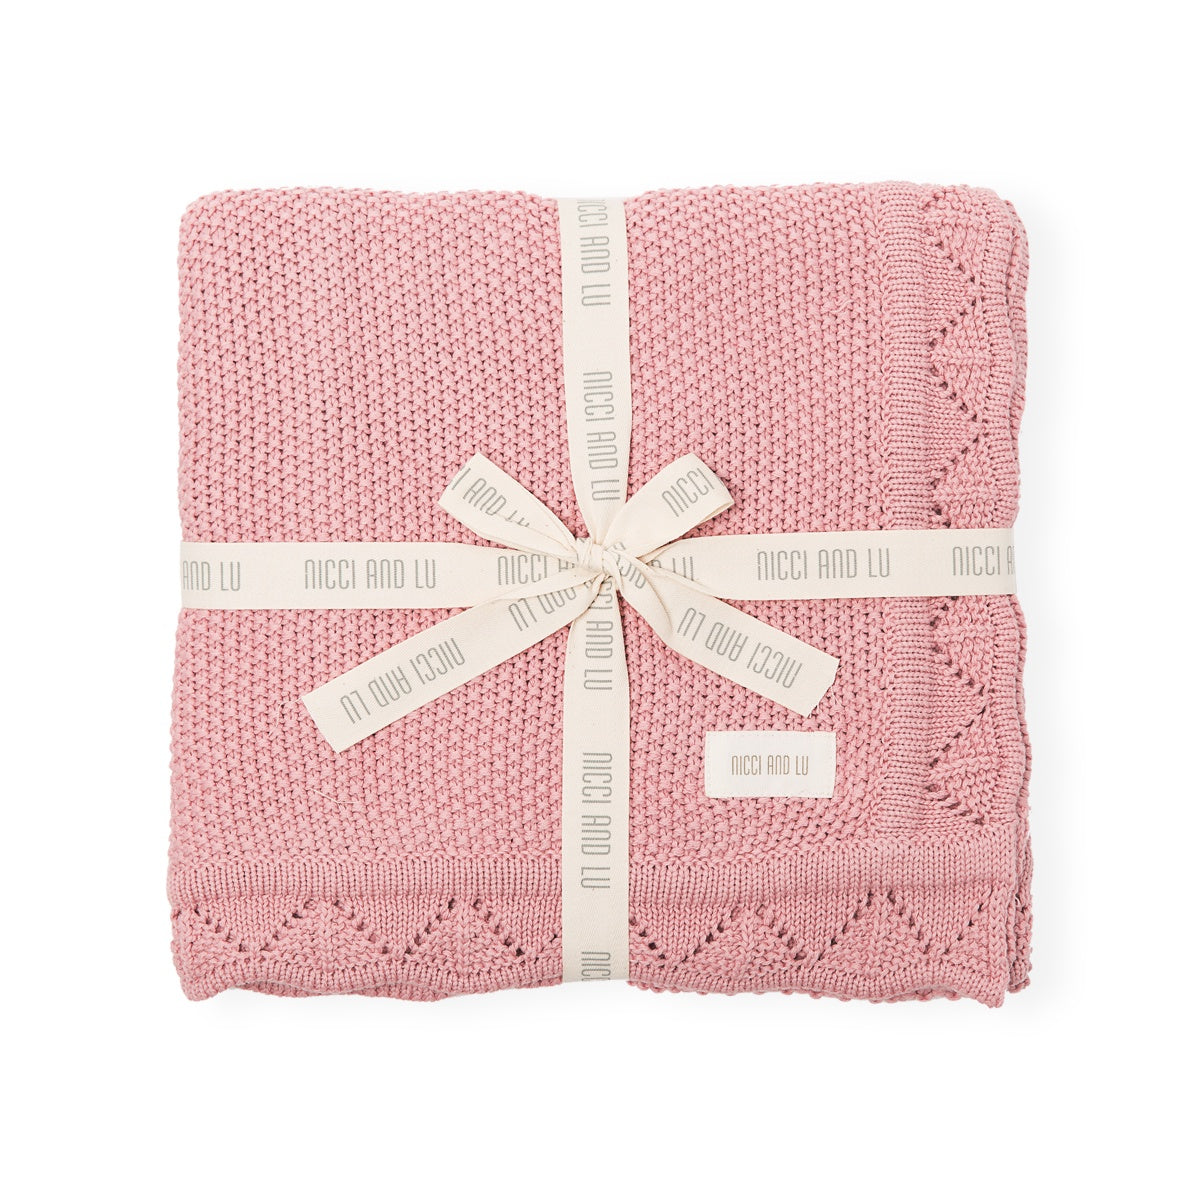 Heirloom Knitted Blanket - Rose Blush